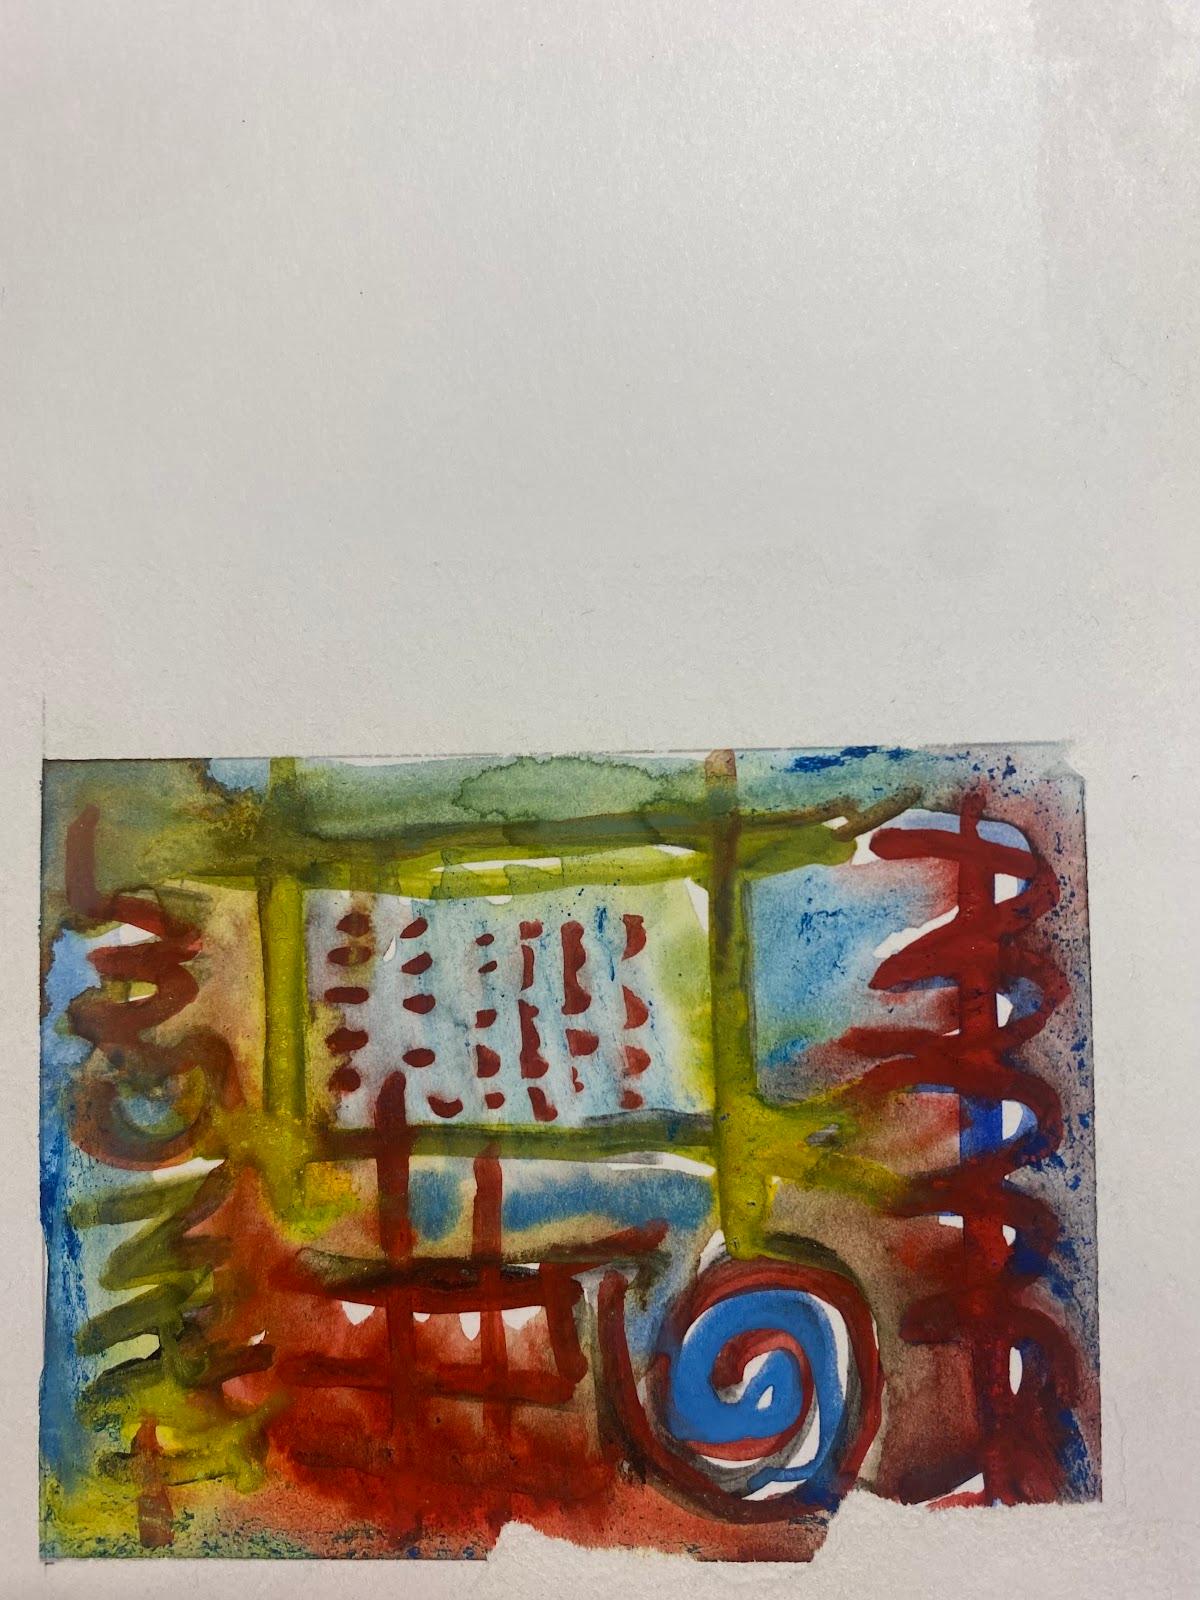 Composition expressionniste abstraite
par Jacques COULAIS (1955-2011)
peinture à la gouache sur papier/carte
non encadré : 10 x 10 pouces
état : excellent
provenance : tous les tableaux de cet artiste que nous avons en vente proviennent du Studio de